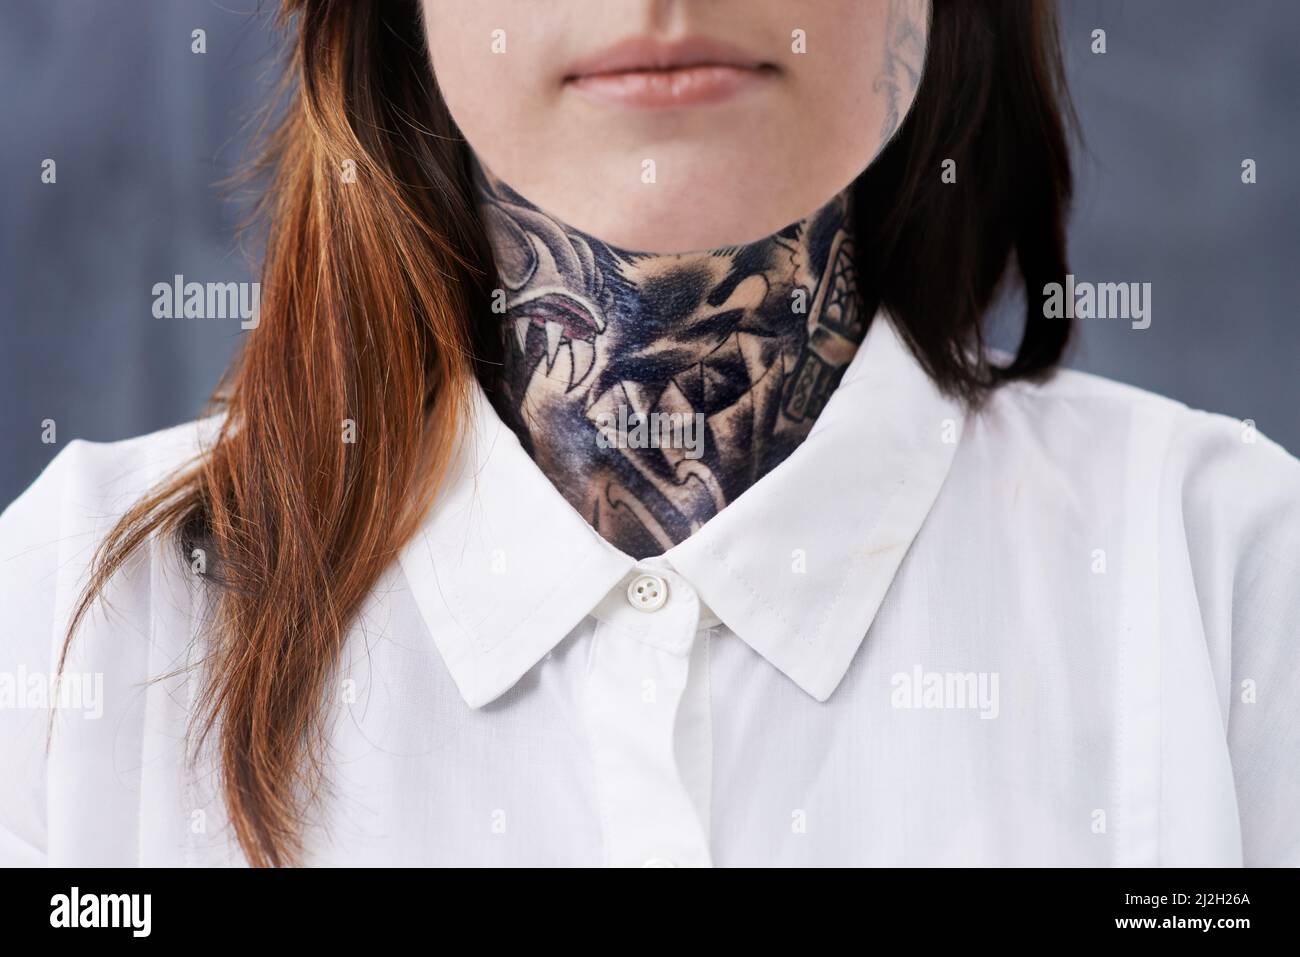 Zerbrechen der Form. Eine kurze Studioaufnahme einer jungen professionellen Frau mit Tattoos auf ihrem Hals und ihren Armen. Stockfoto